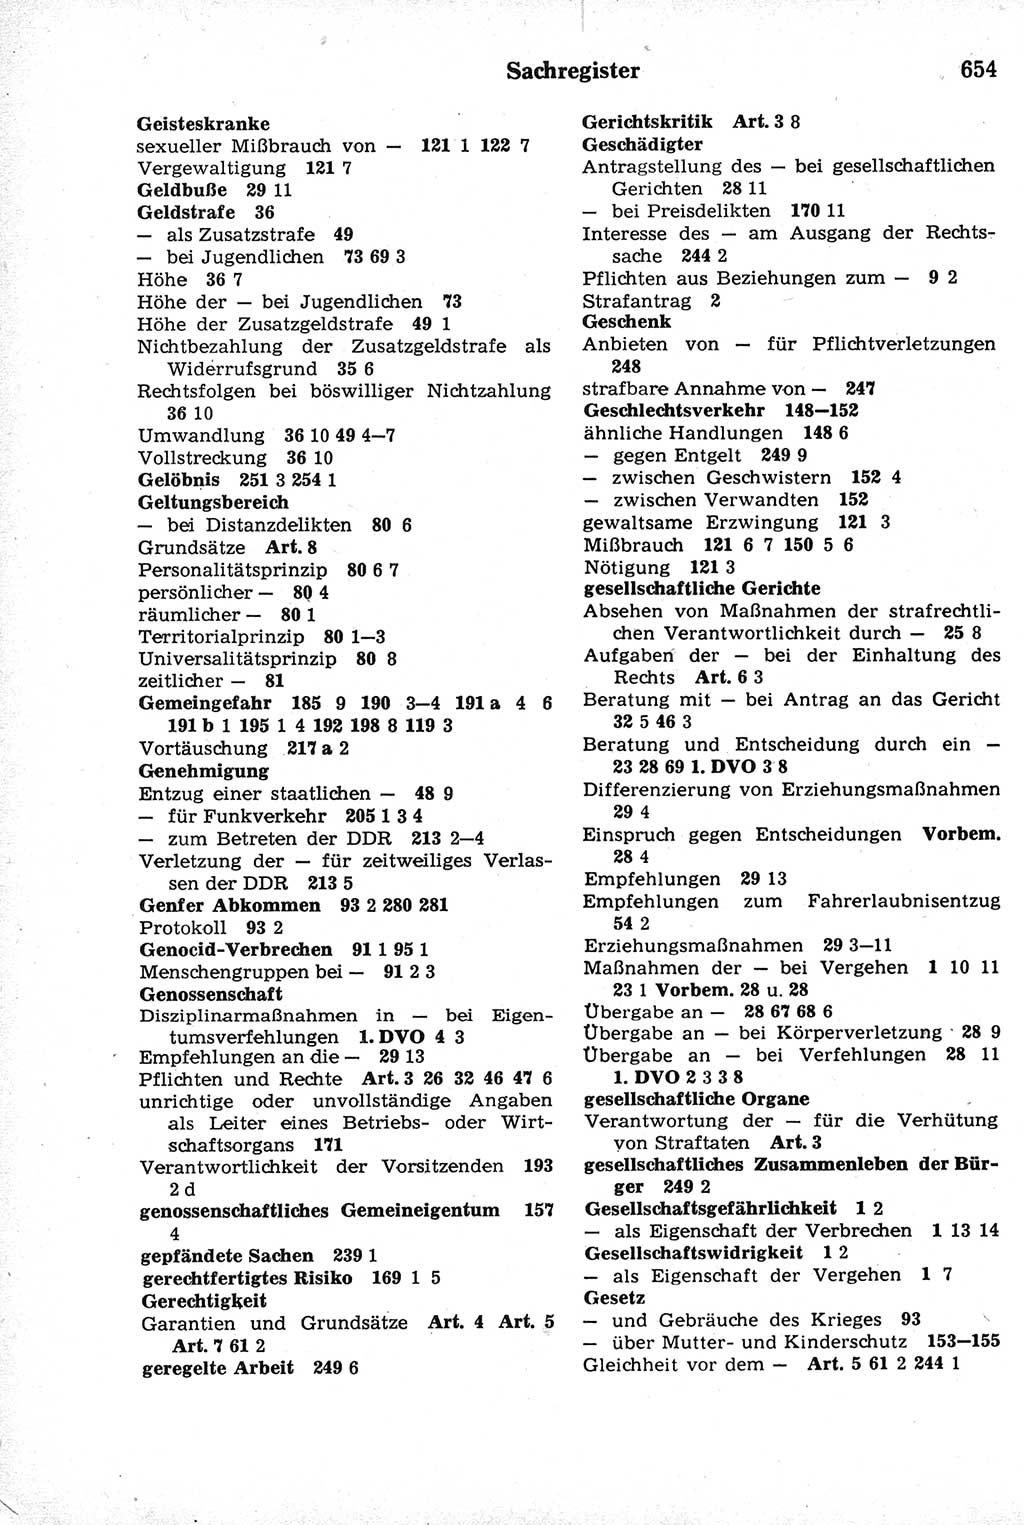 Strafrecht der Deutschen Demokratischen Republik (DDR), Kommentar zum Strafgesetzbuch (StGB) 1981, Seite 654 (Strafr. DDR Komm. StGB 1981, S. 654)